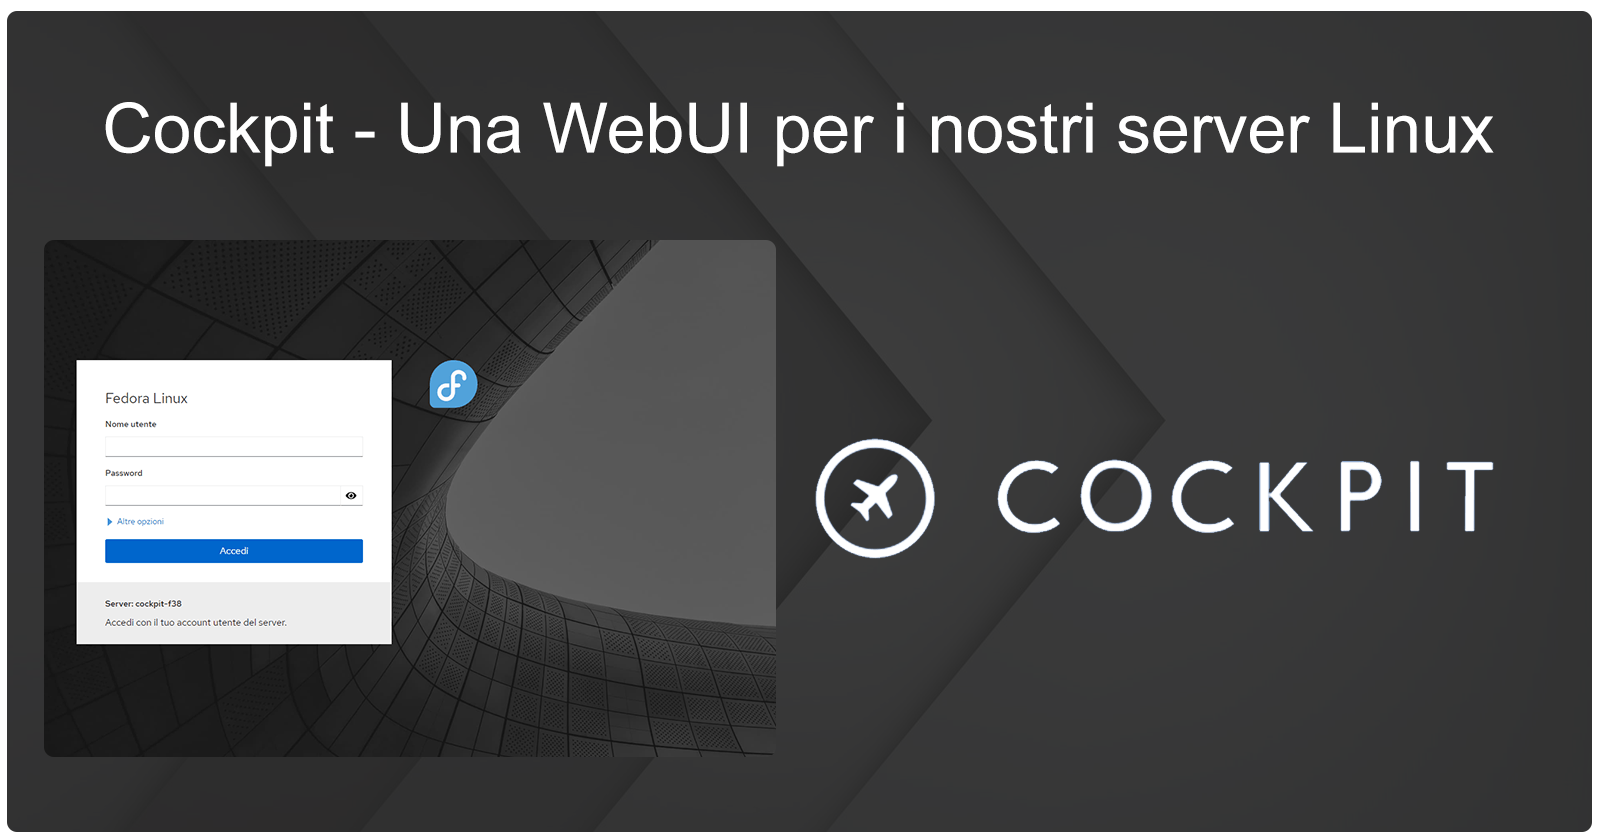 Cockpit - Una WebUI per i nostri server Linux